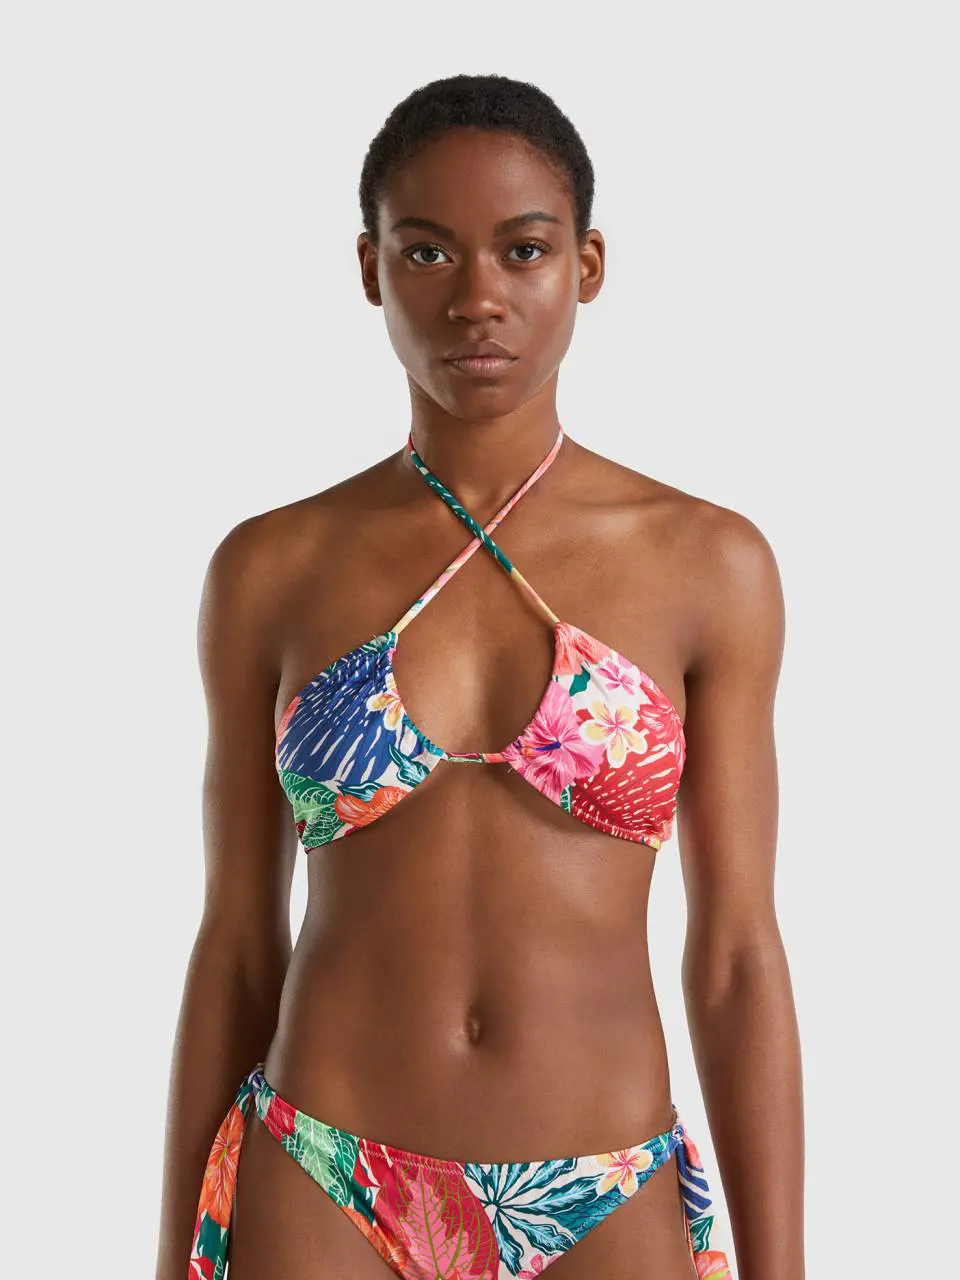 Benetton bikini top with floral print. 1